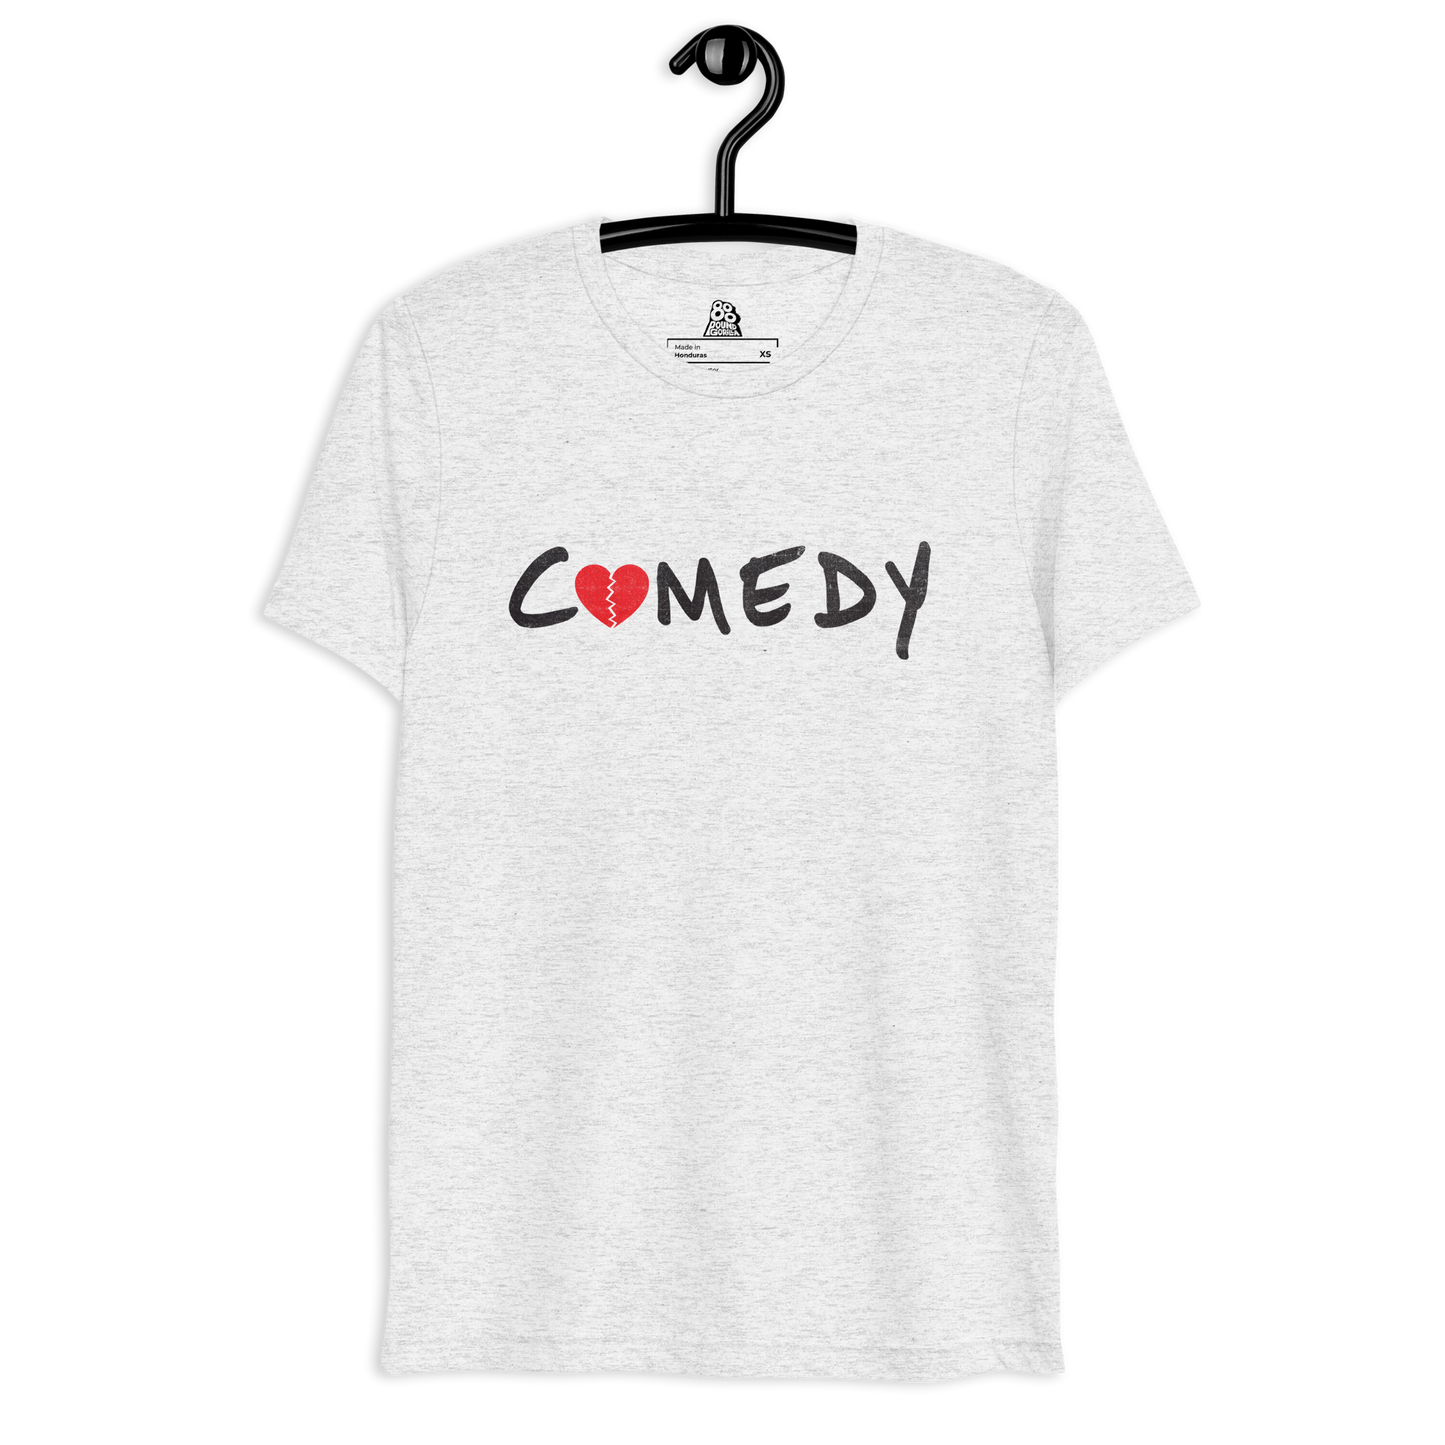 Broken Heart Comedy - Short sleeve t-shirt